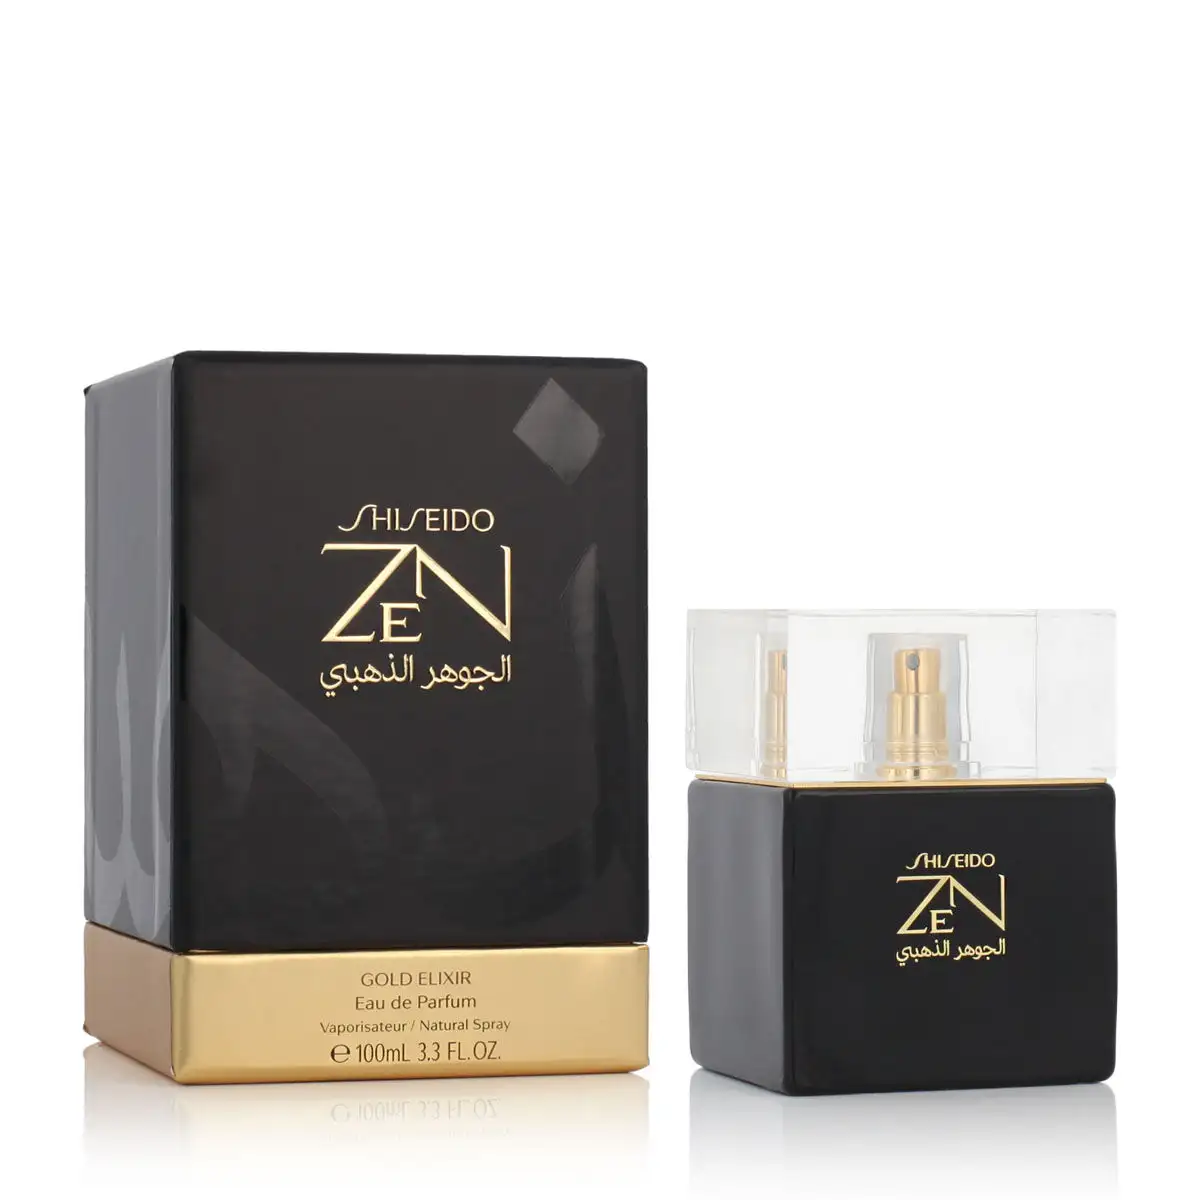 Parfum femme shiseido edp zen gold elixir 100 ml _2200. DIAYTAR SENEGAL - Votre Destination pour un Shopping Réfléchi. Découvrez notre gamme variée et choisissez des produits qui correspondent à vos valeurs et à votre style de vie.